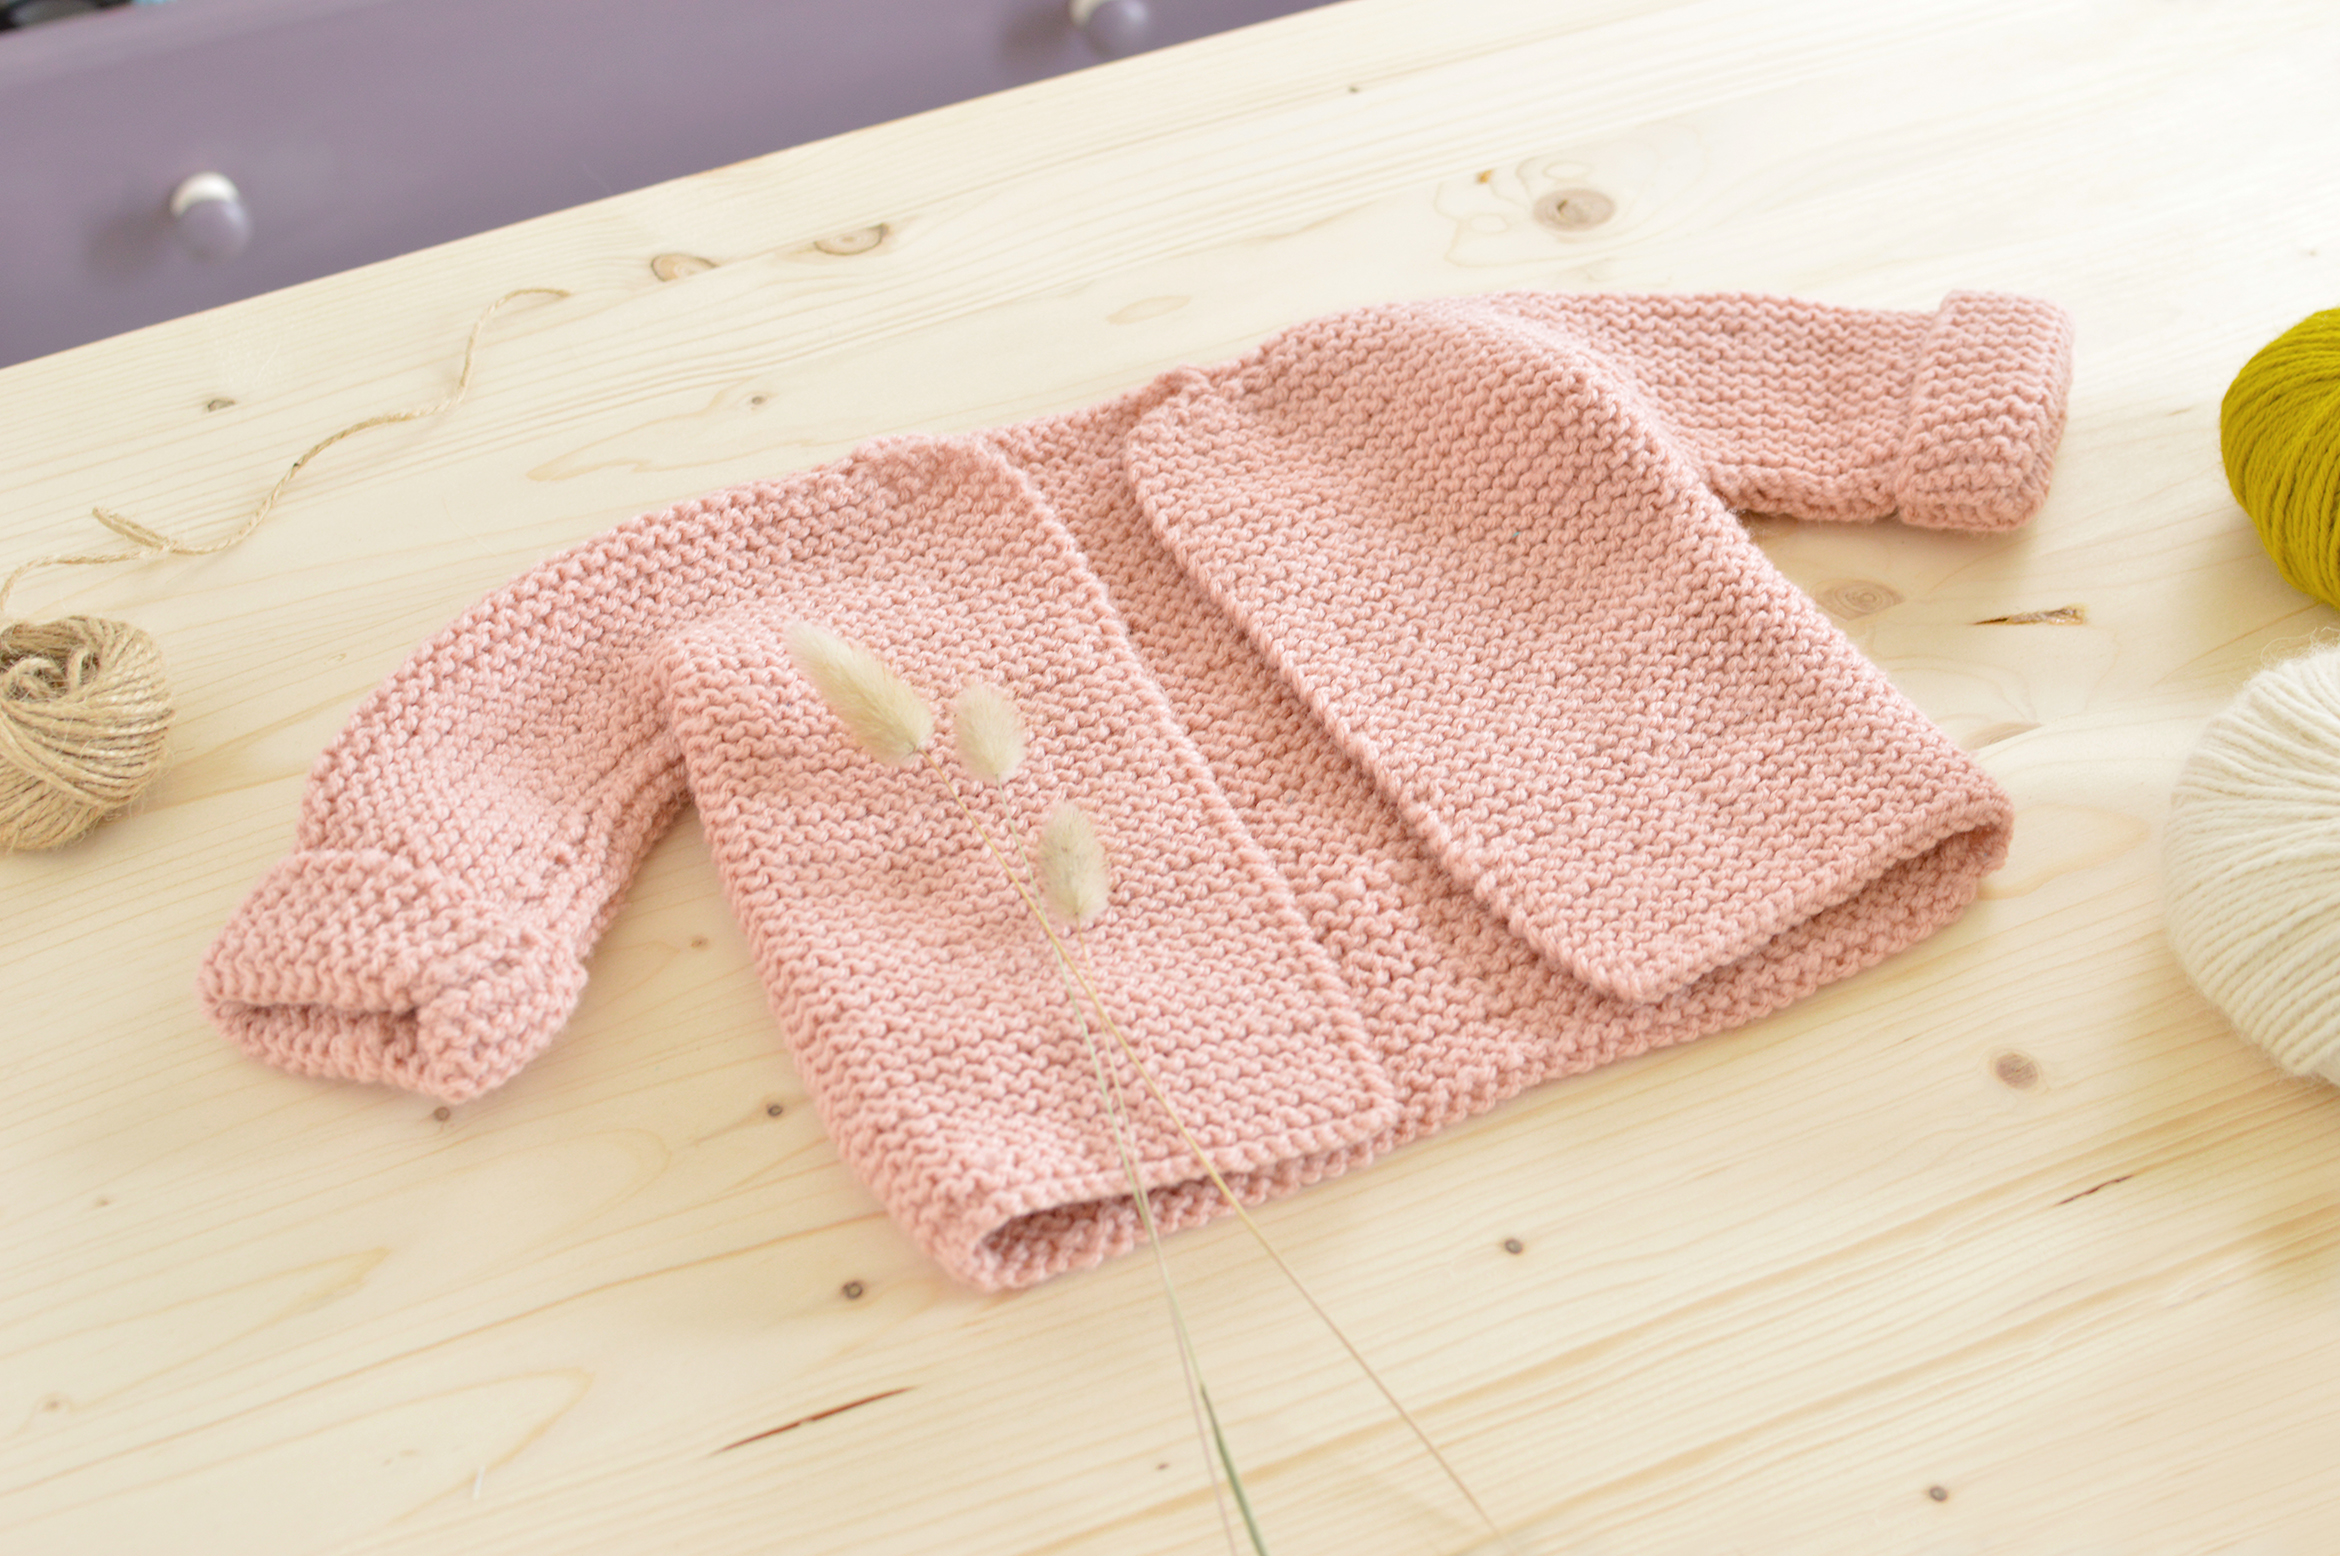 tricoter un gilet facile pour bebe